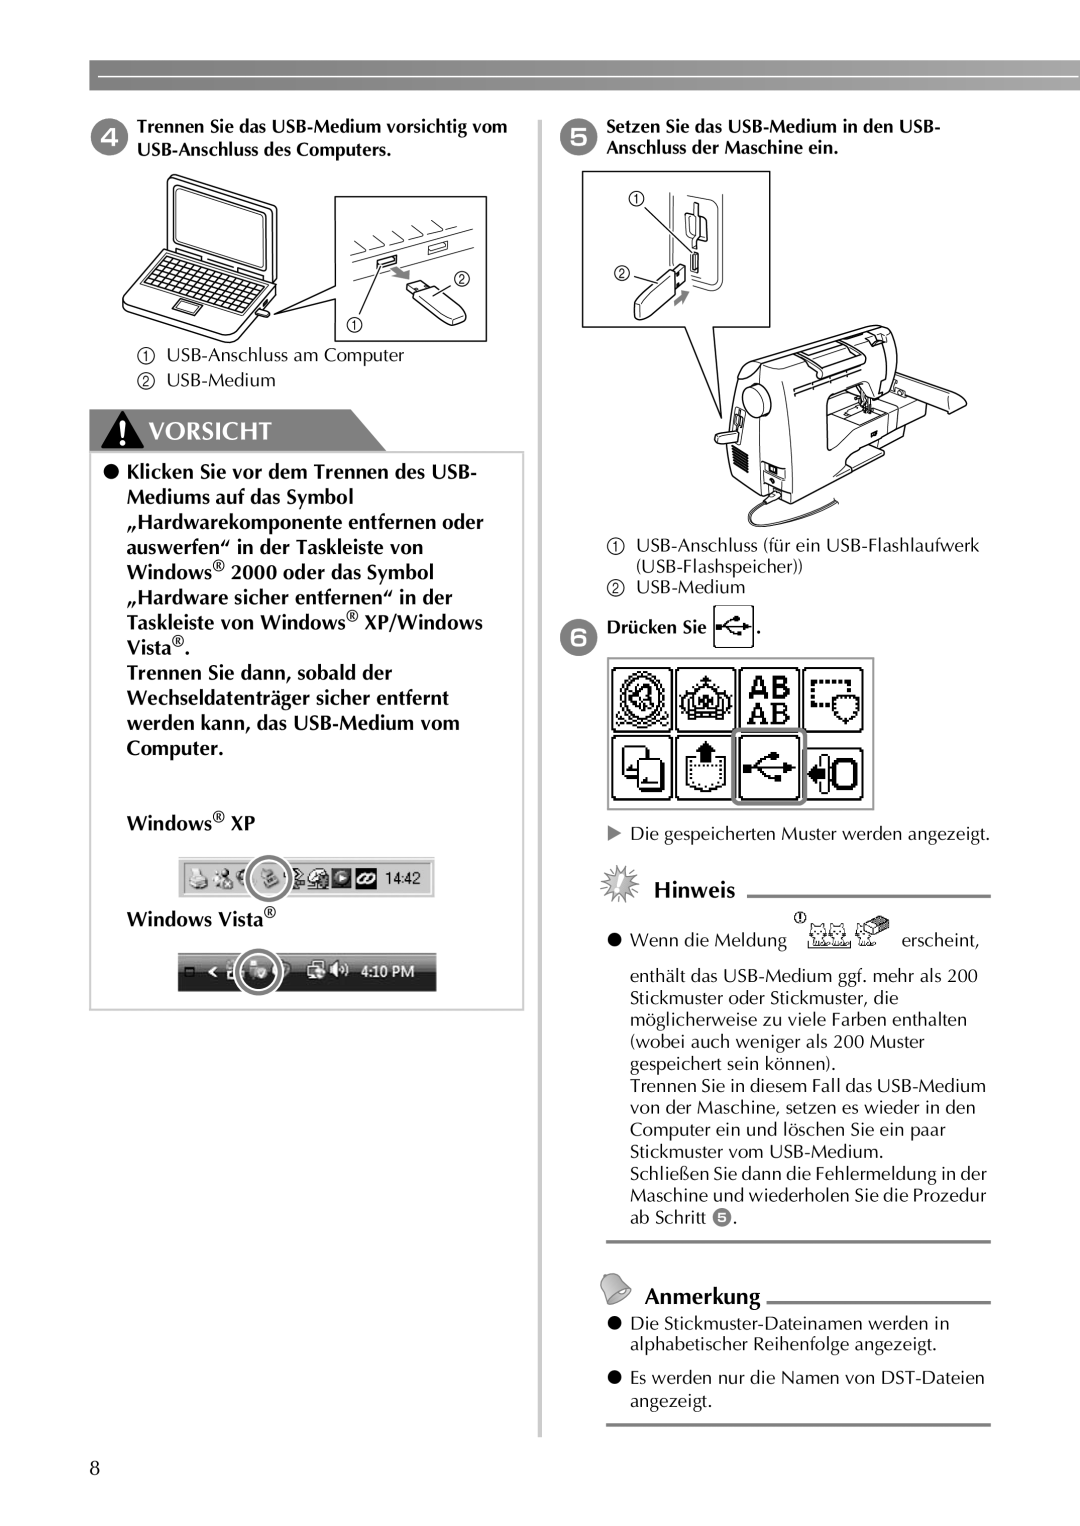 Brother 750E auswerfen“ in der Taskleiste von Windows 2000 oder das Symbol, f Drücken Sie, Vorsicht, Hinweis, Anmerkung 